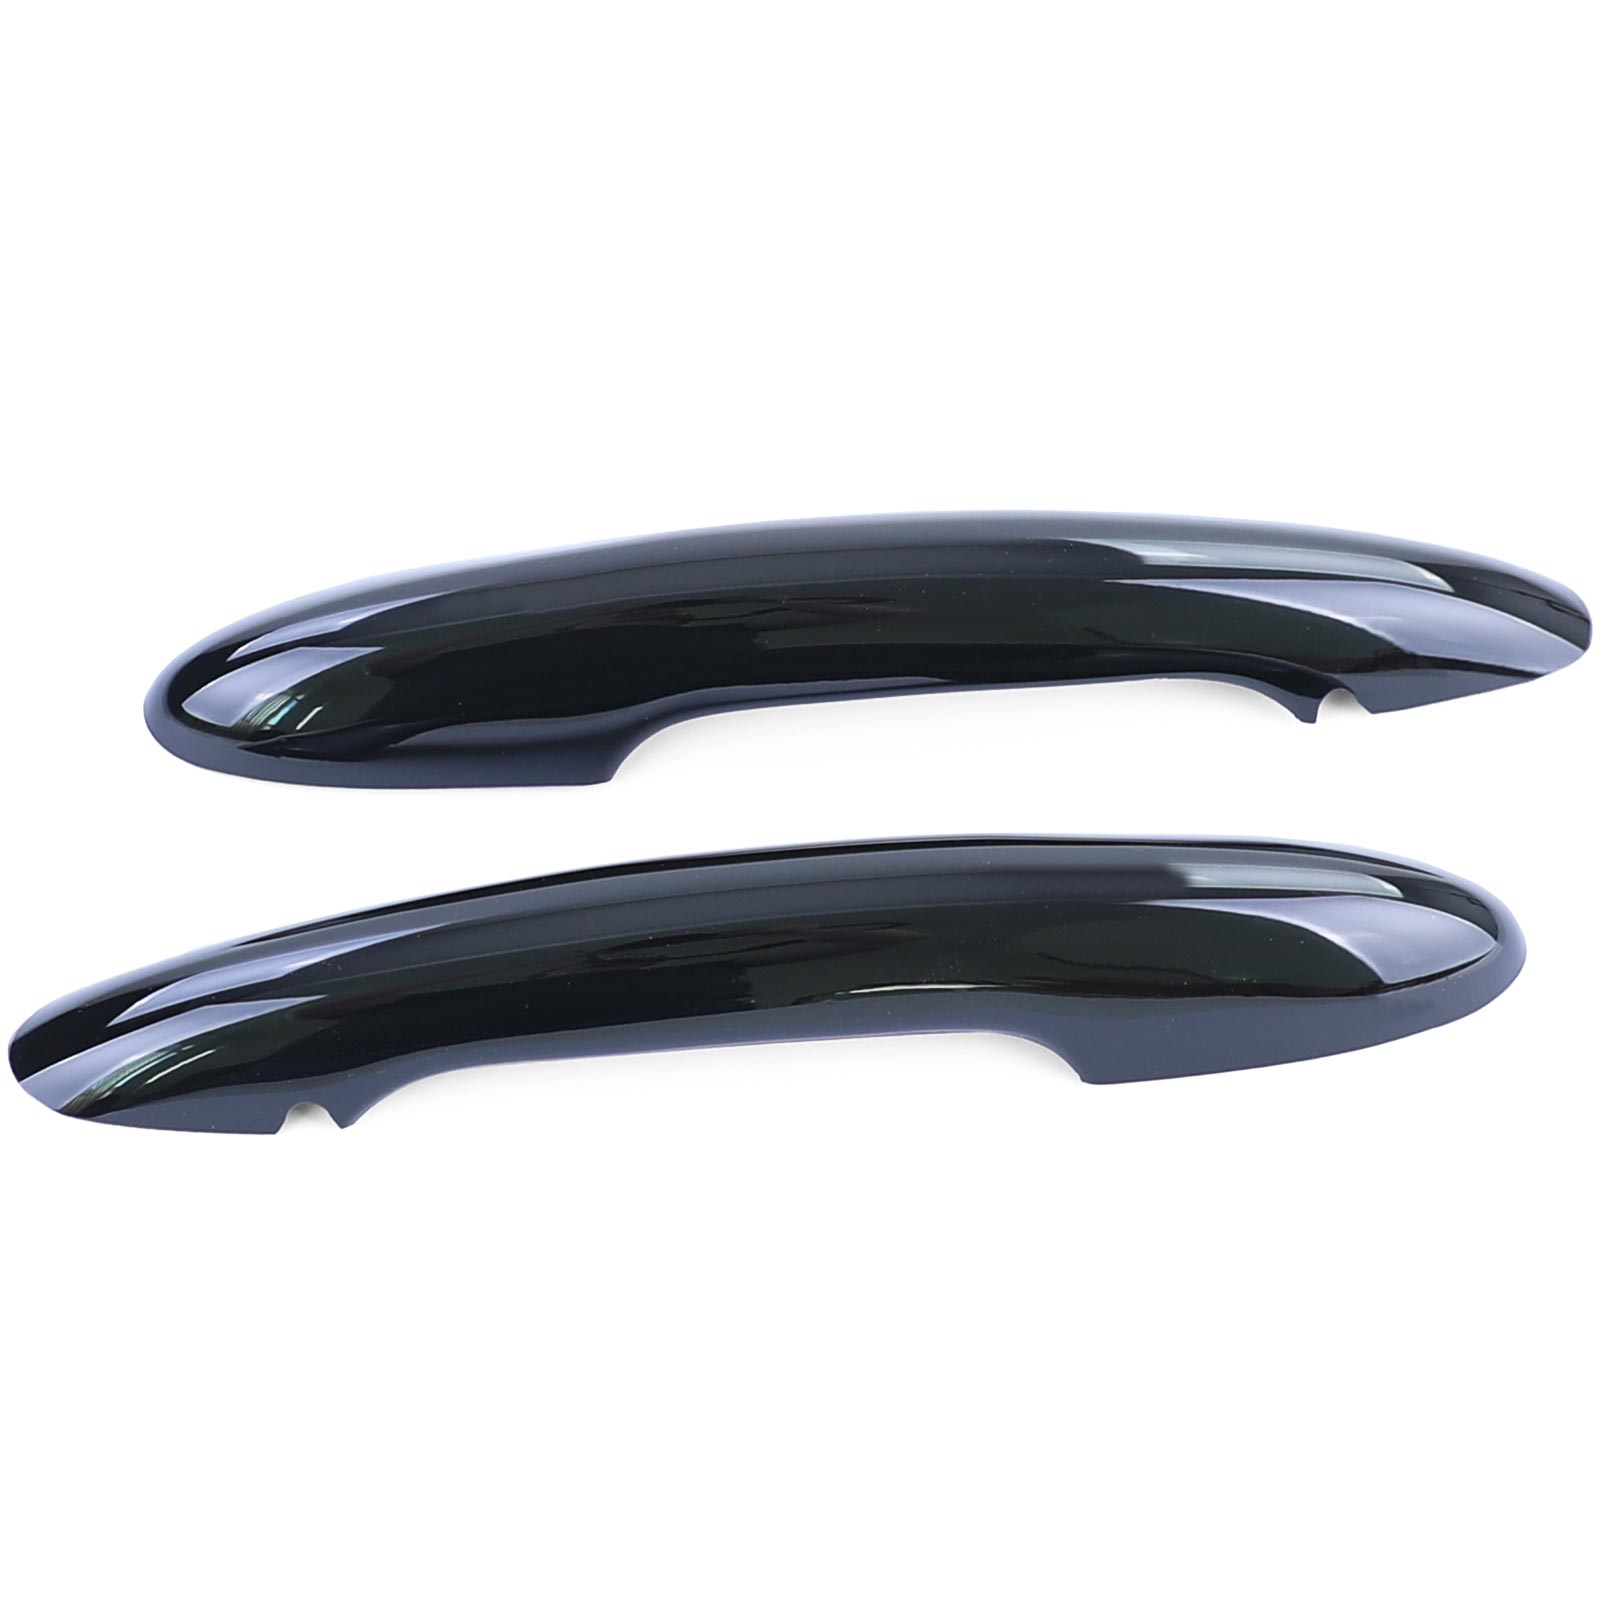 Kaufe 2PCS im Set glänzend schwarz Türgriffabdeckung Aufkleber Trim für MINI  Cooper S JCW F56 F57 Auto-Styling Außenteile